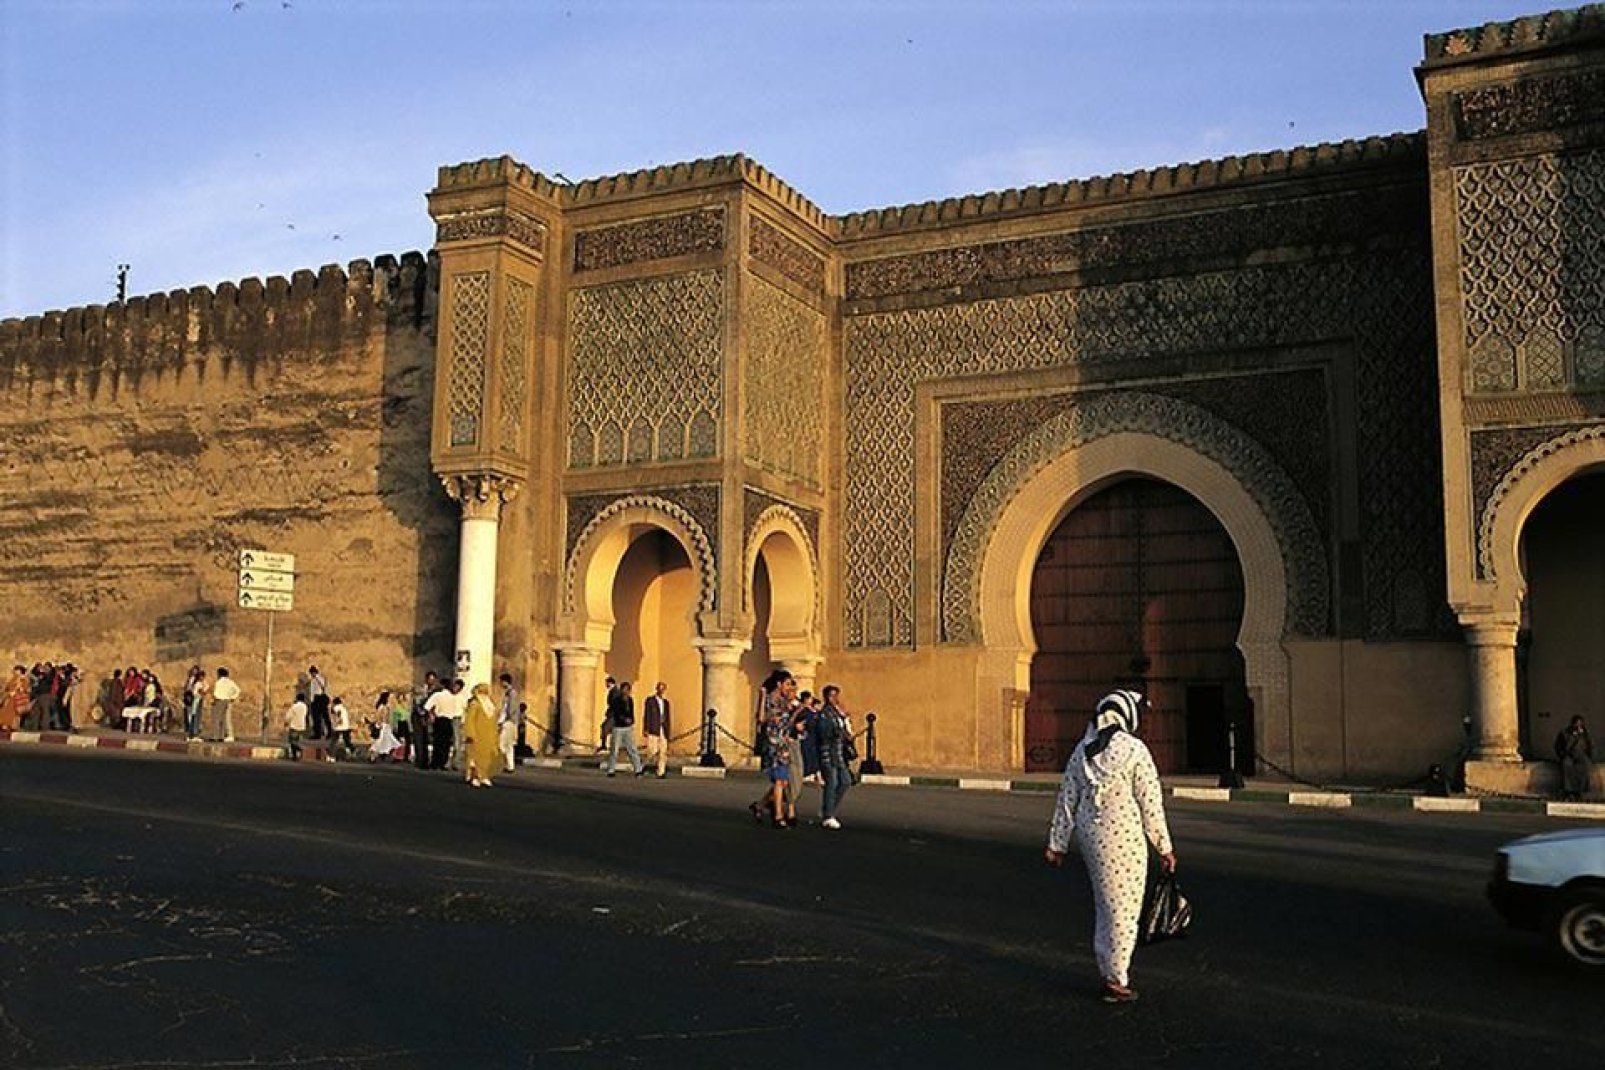 Mequinez es un tesoro en medio de Marruecos, con sus múltiples palacios, monumentos, jardines y mezquitas.